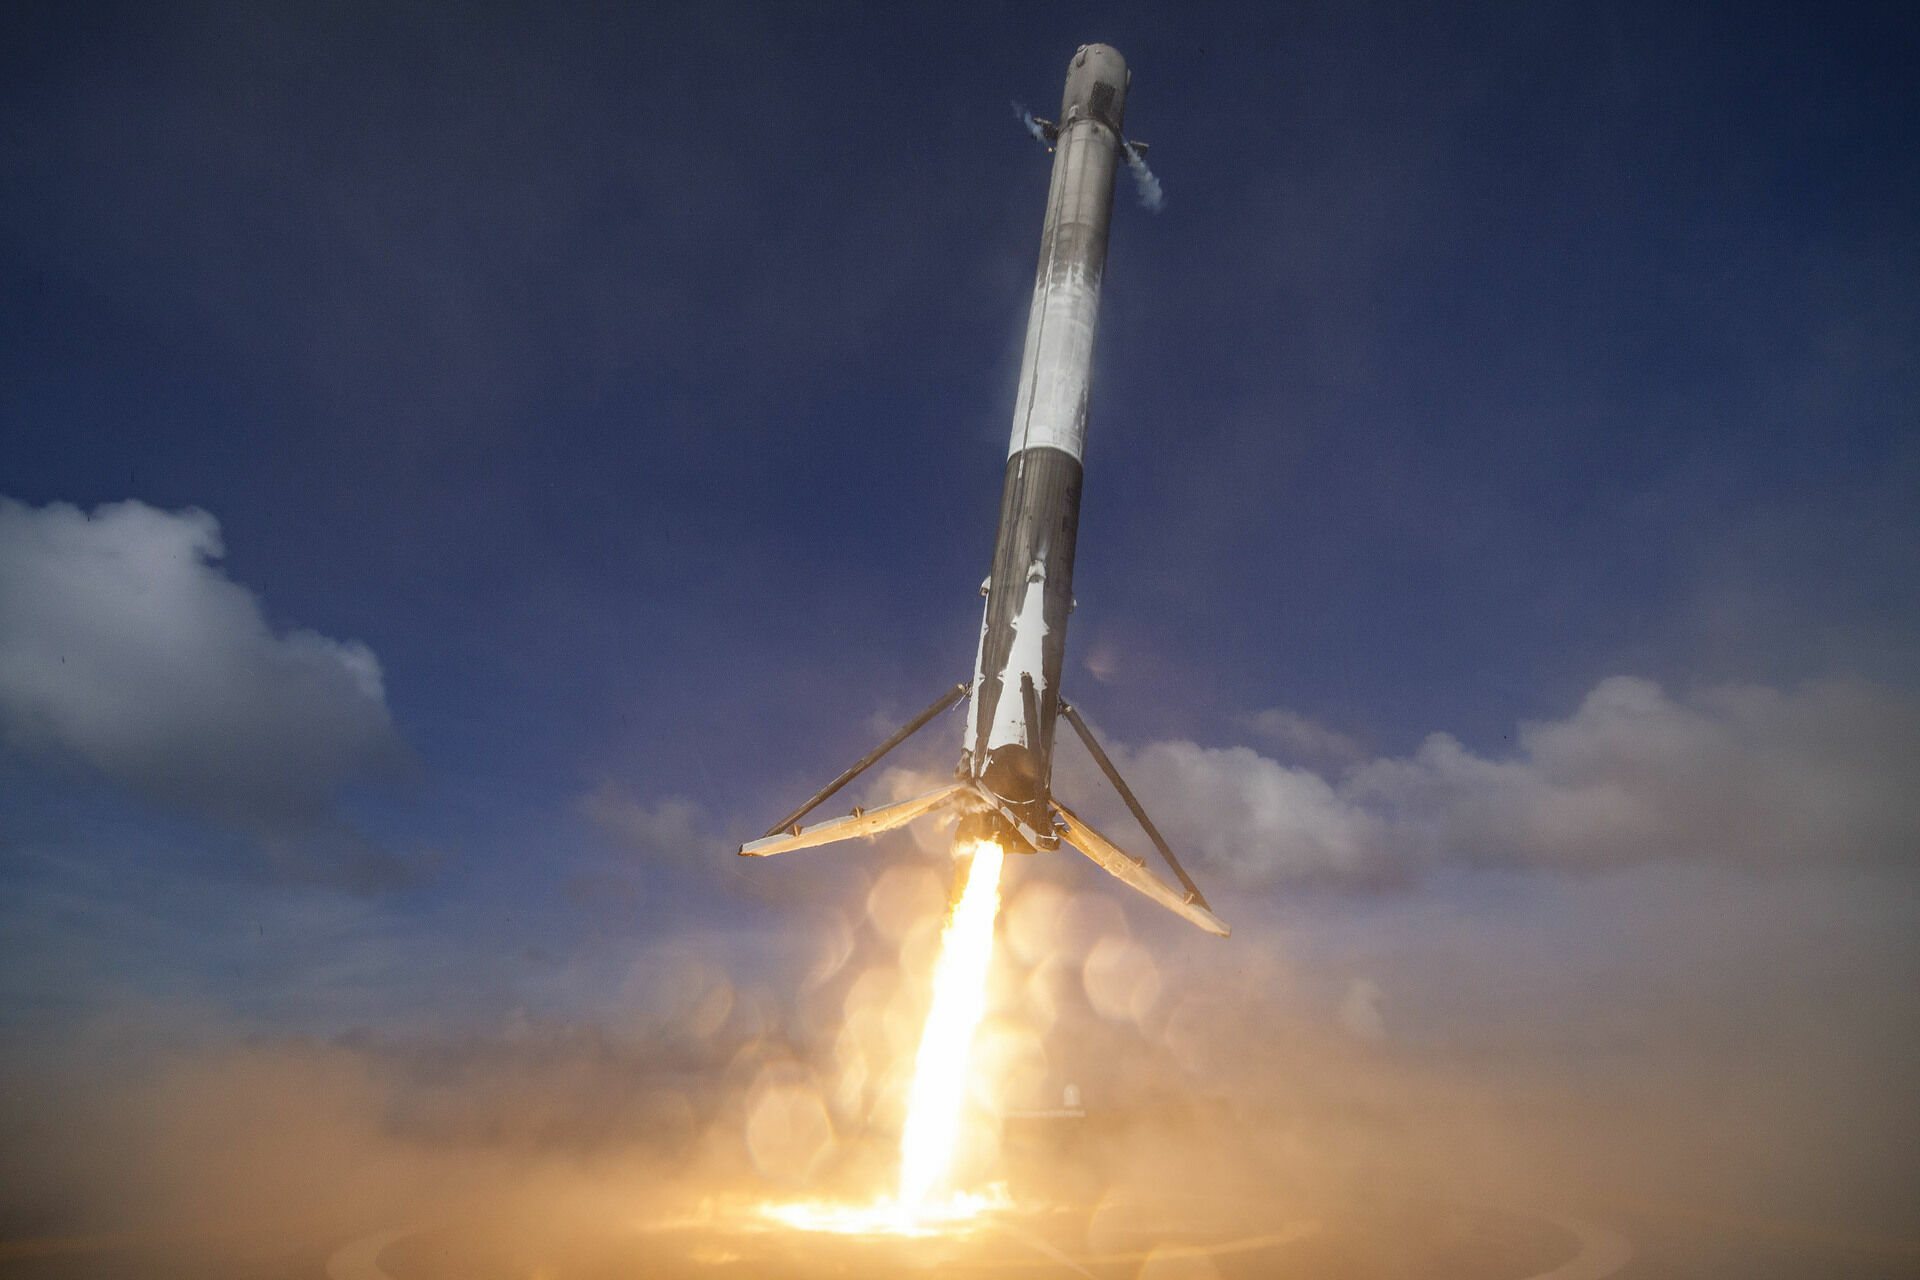 "Села в лужу": опубликовано видео падения ракеты Falcon 9